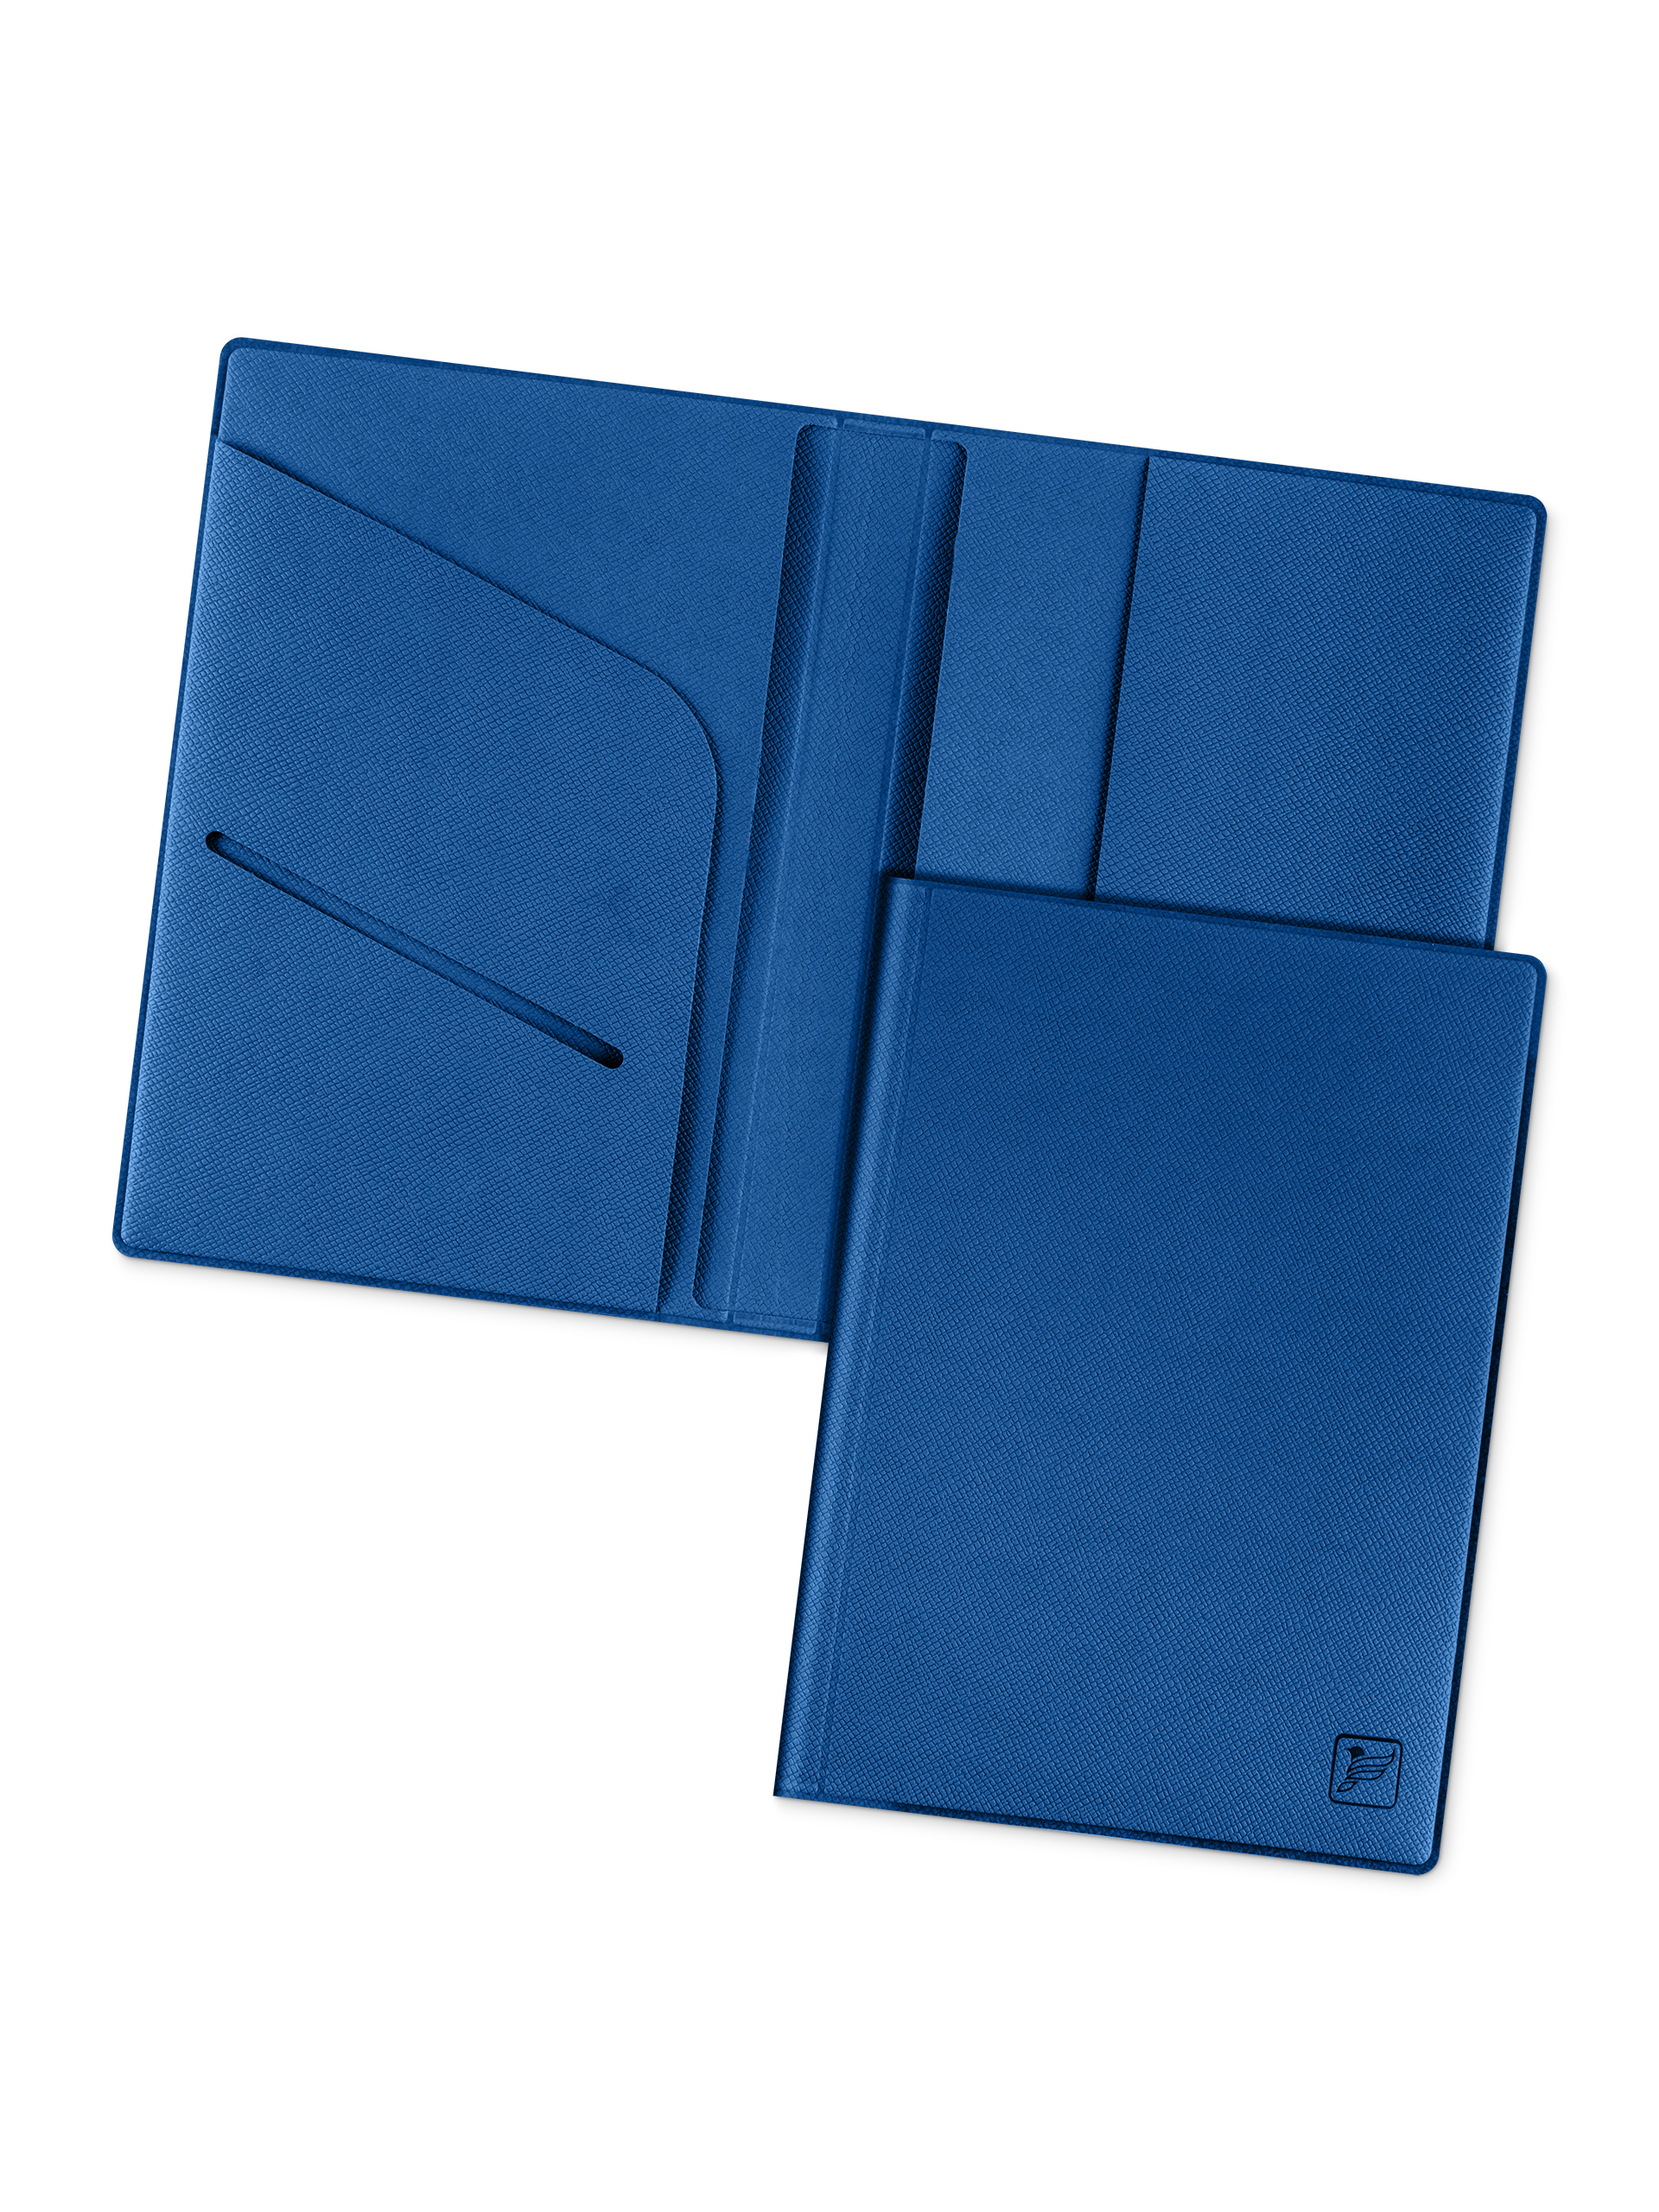 Обложка для паспорта с дополнительными отделениями Flexpocket KOP-01 синяя